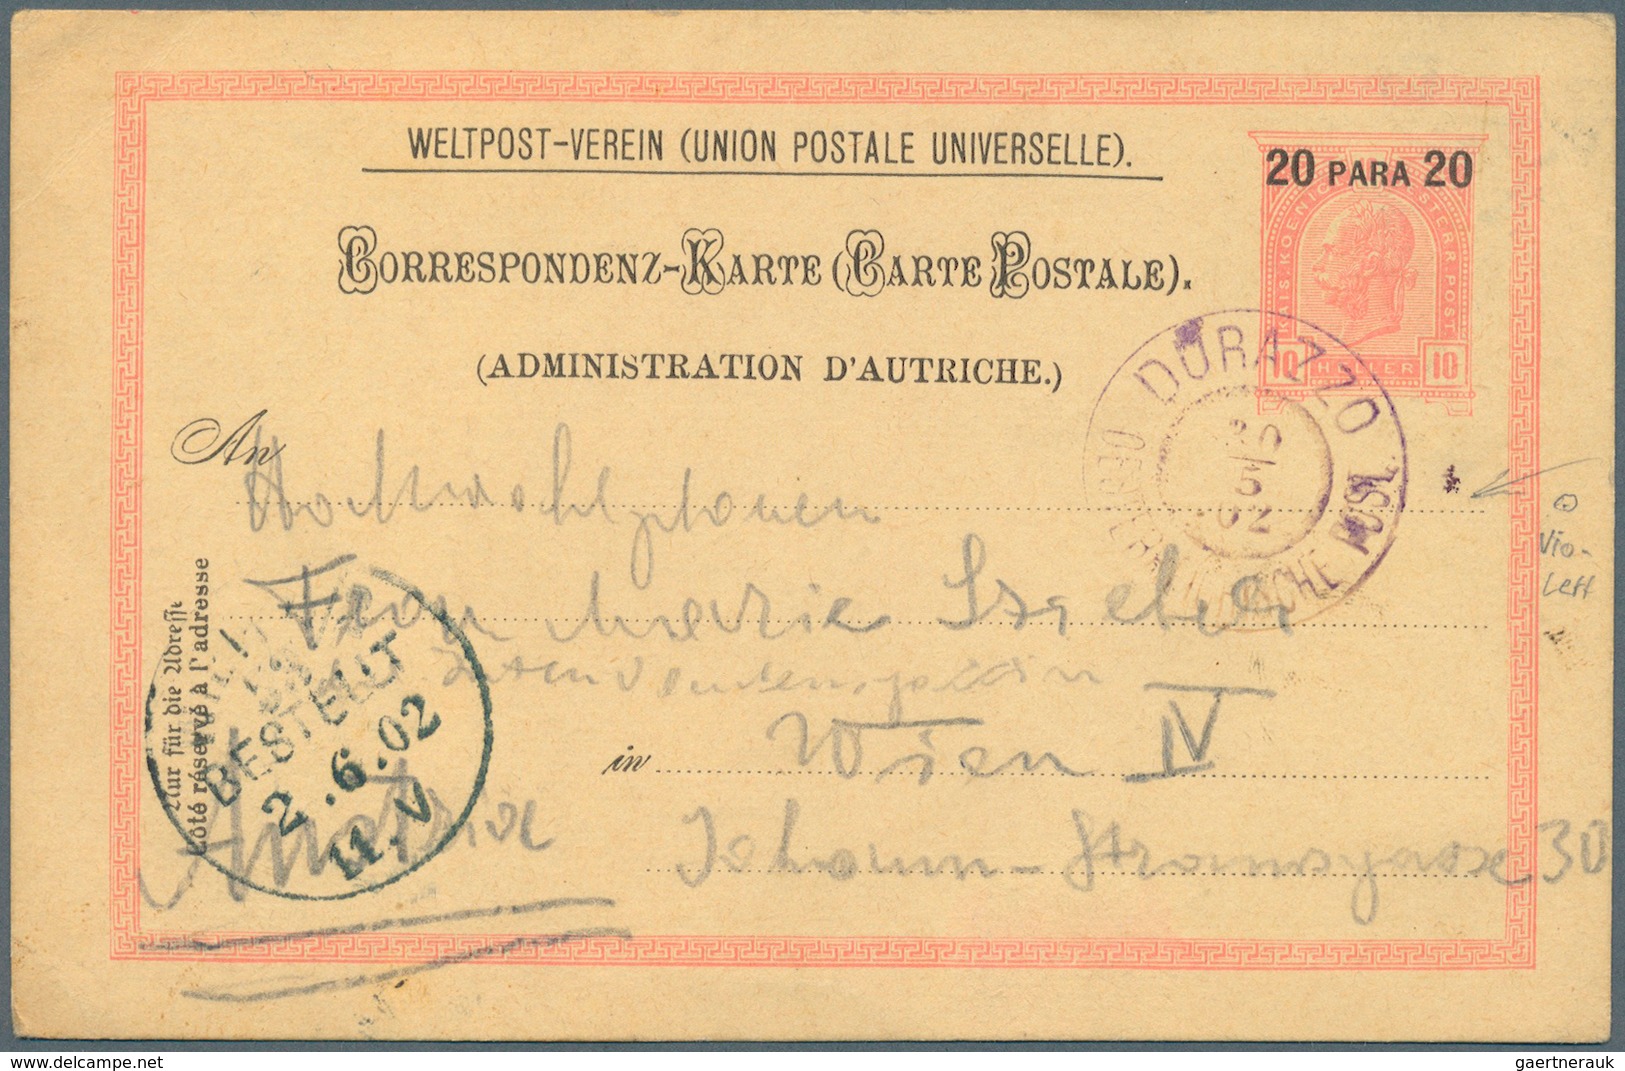 Österreichische Post in der Levante: 1866/1918, 22 Belege ohne Constantinpel und Smyrna, dabei u. a.